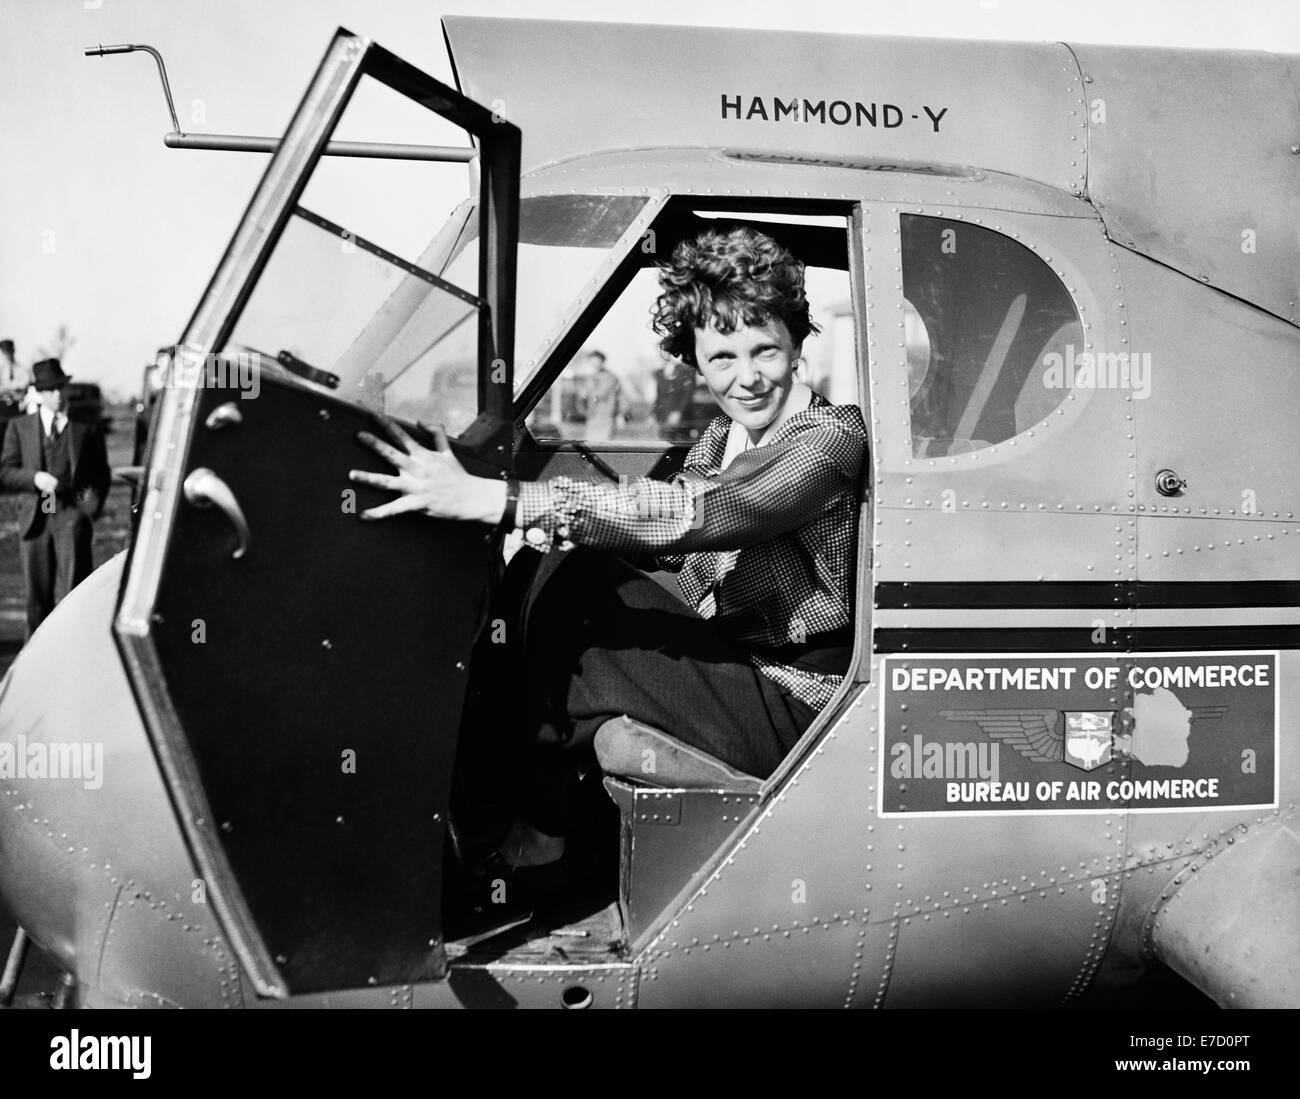 Vintage-Foto der amerikanischen Luftfahrtpionierin und Autorin Amelia Earhart (1897 – 1939 für tot erklärt) – Earhart und ihr Navigator Fred Noonan verschwanden 1937 bekanntermaßen, als sie versuchte, das erste Weibchen zu werden, das einen Rundflug über den Globus absolvierte. Earhart ist im Jahr 1936 im Cockpit eines US-Handelsministeriums abgebildet. Stockfoto